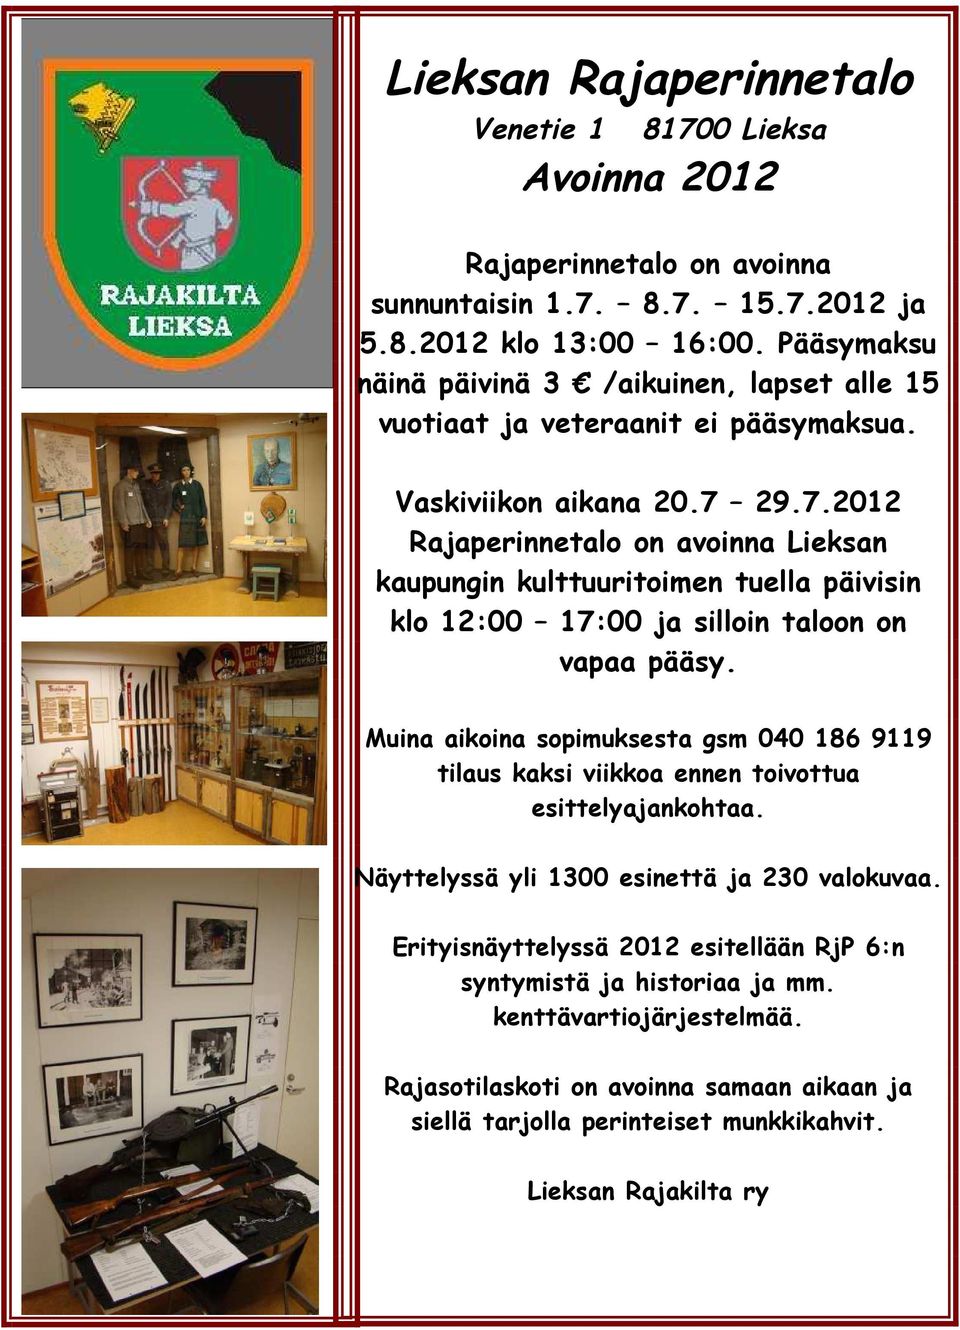 29.7.2012 Rajaperinnetalo on avoinna Lieksan kaupungin kulttuuritoimen tuella päivisin klo 12:00 17:00 ja silloin taloon on vapaa pääsy.